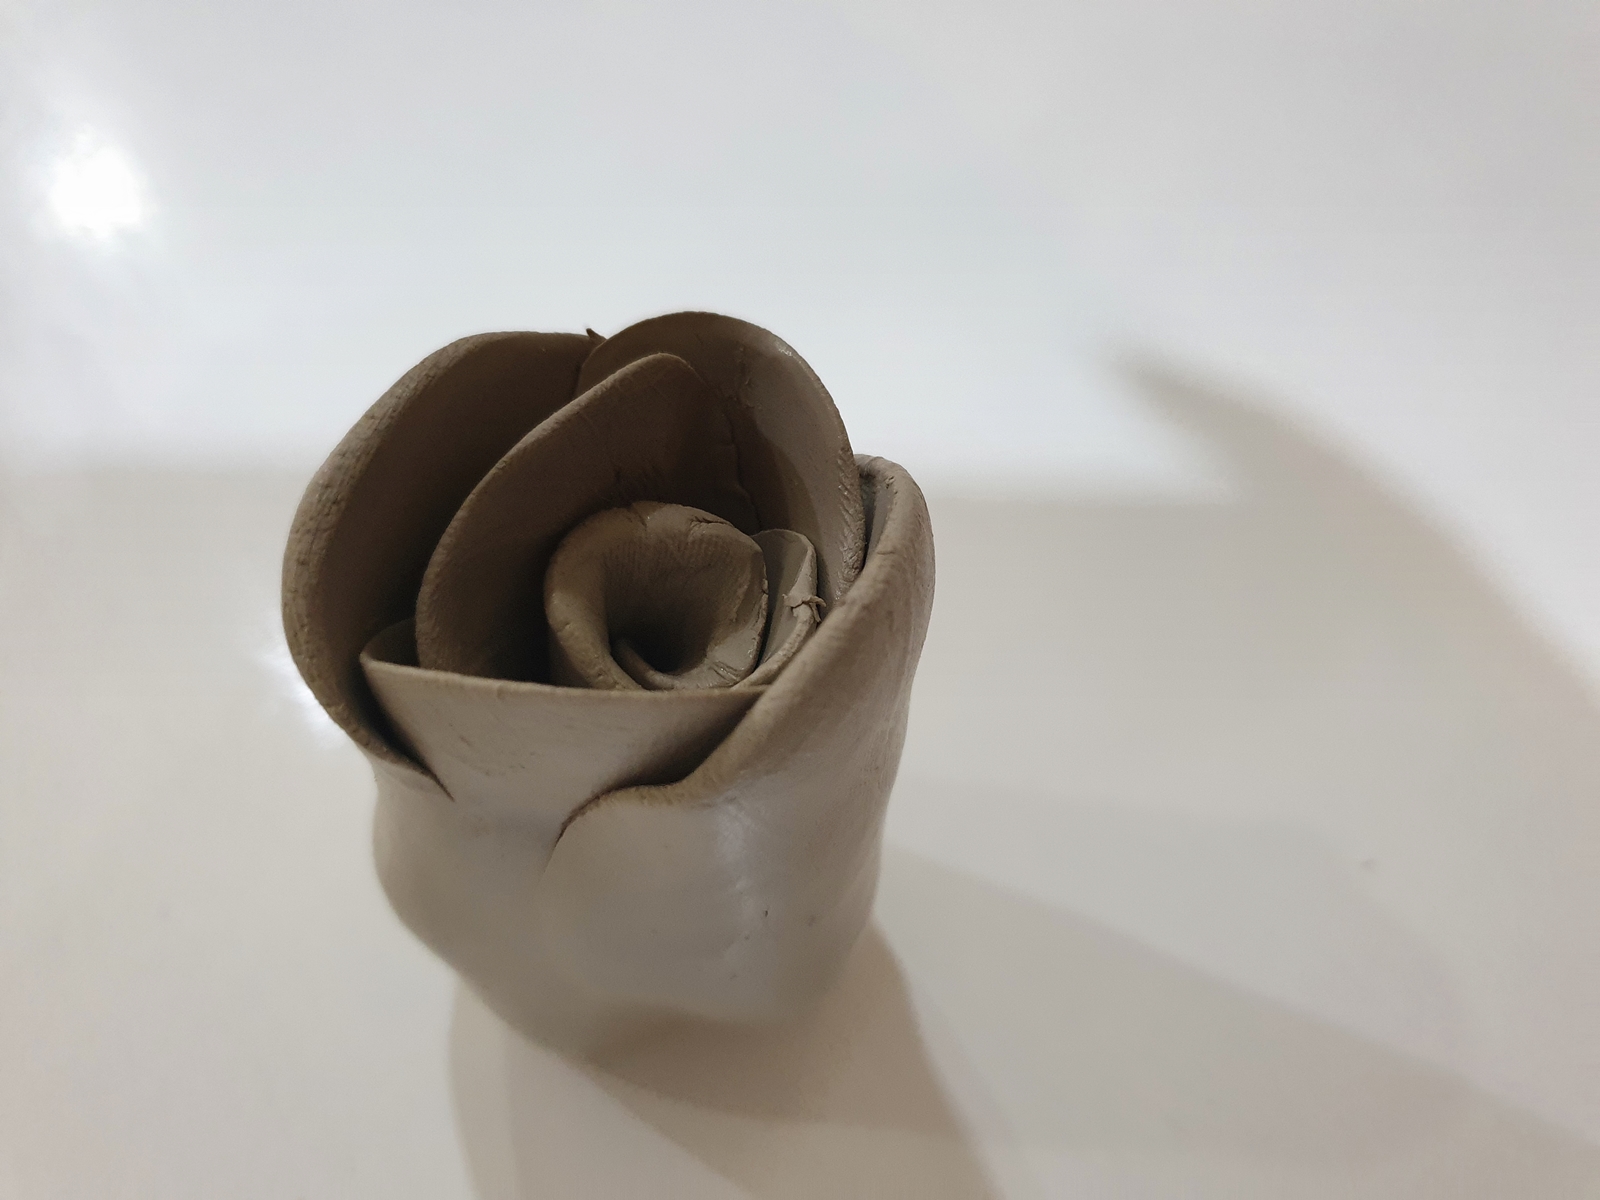 Gotowa różyczka wykonana na warsztatach porcelanowych w Żywym Muzeum Porcelany, jeszcze przed wypiekiem.